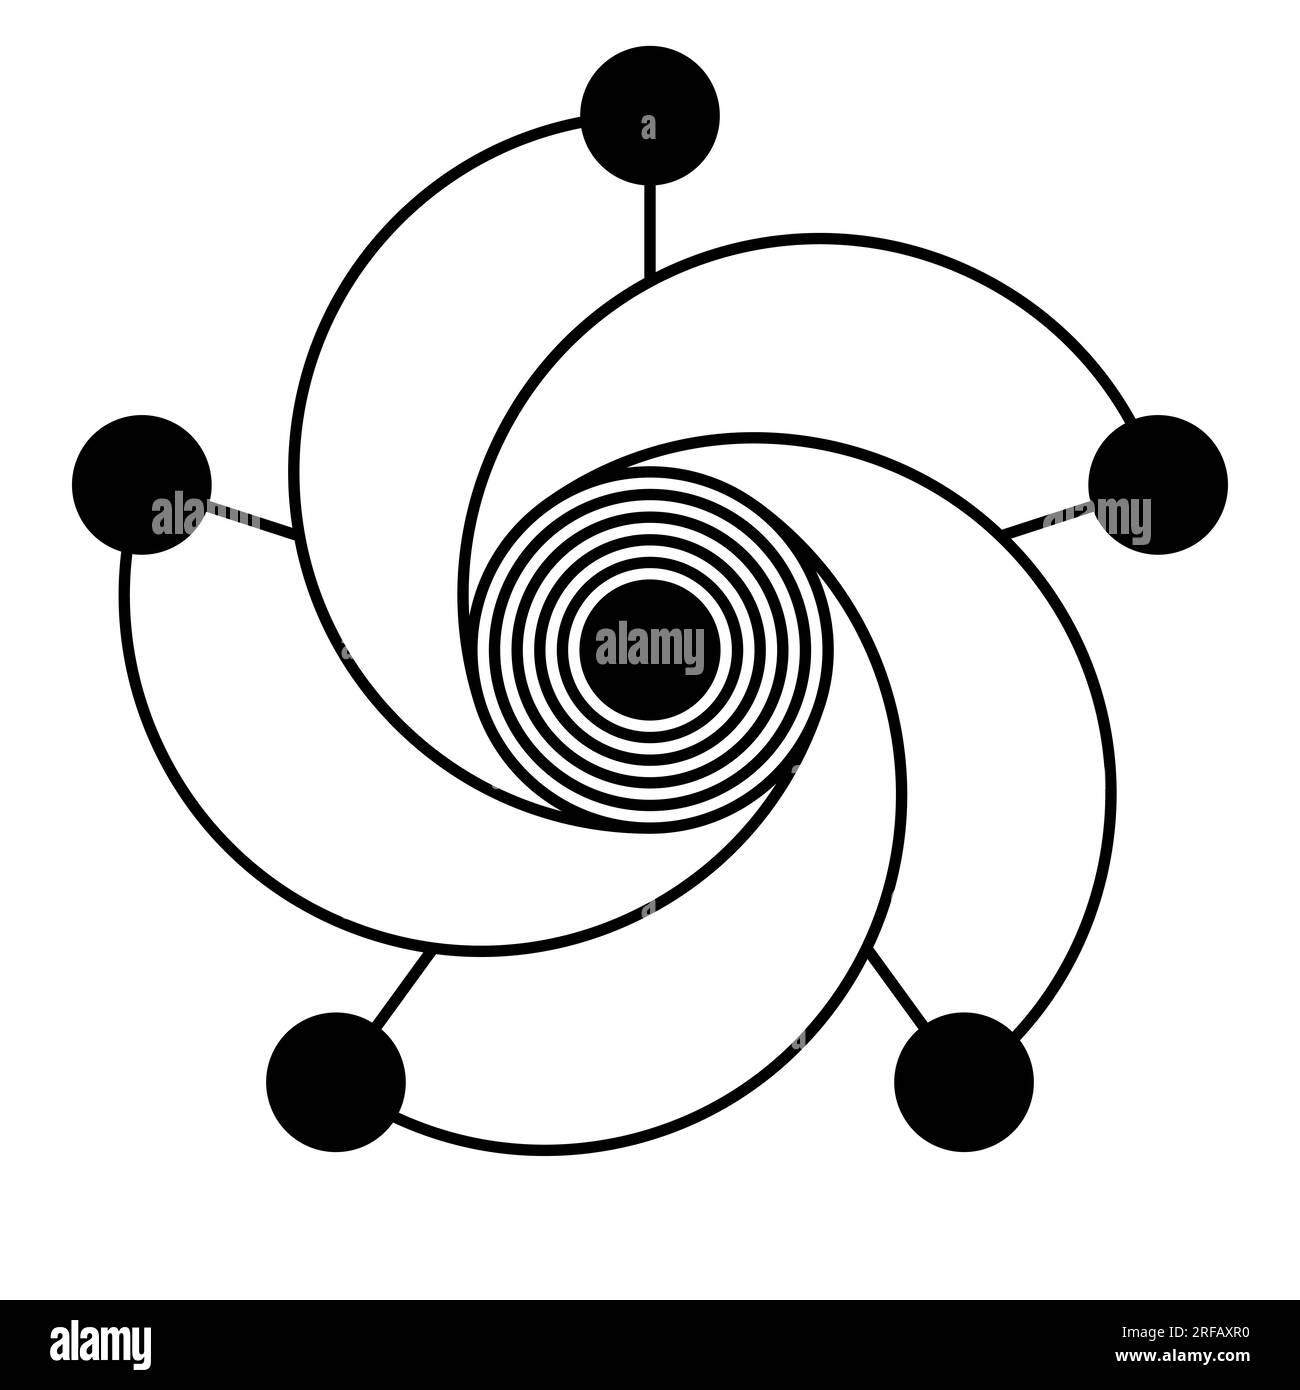 Pentagramme et spirale avec des cercles. Étoile à cinq branches, composée de 5 cercles, reliée à un sixième cercle au centre. Modélisé sur un motif de cercle de recadrage. Banque D'Images